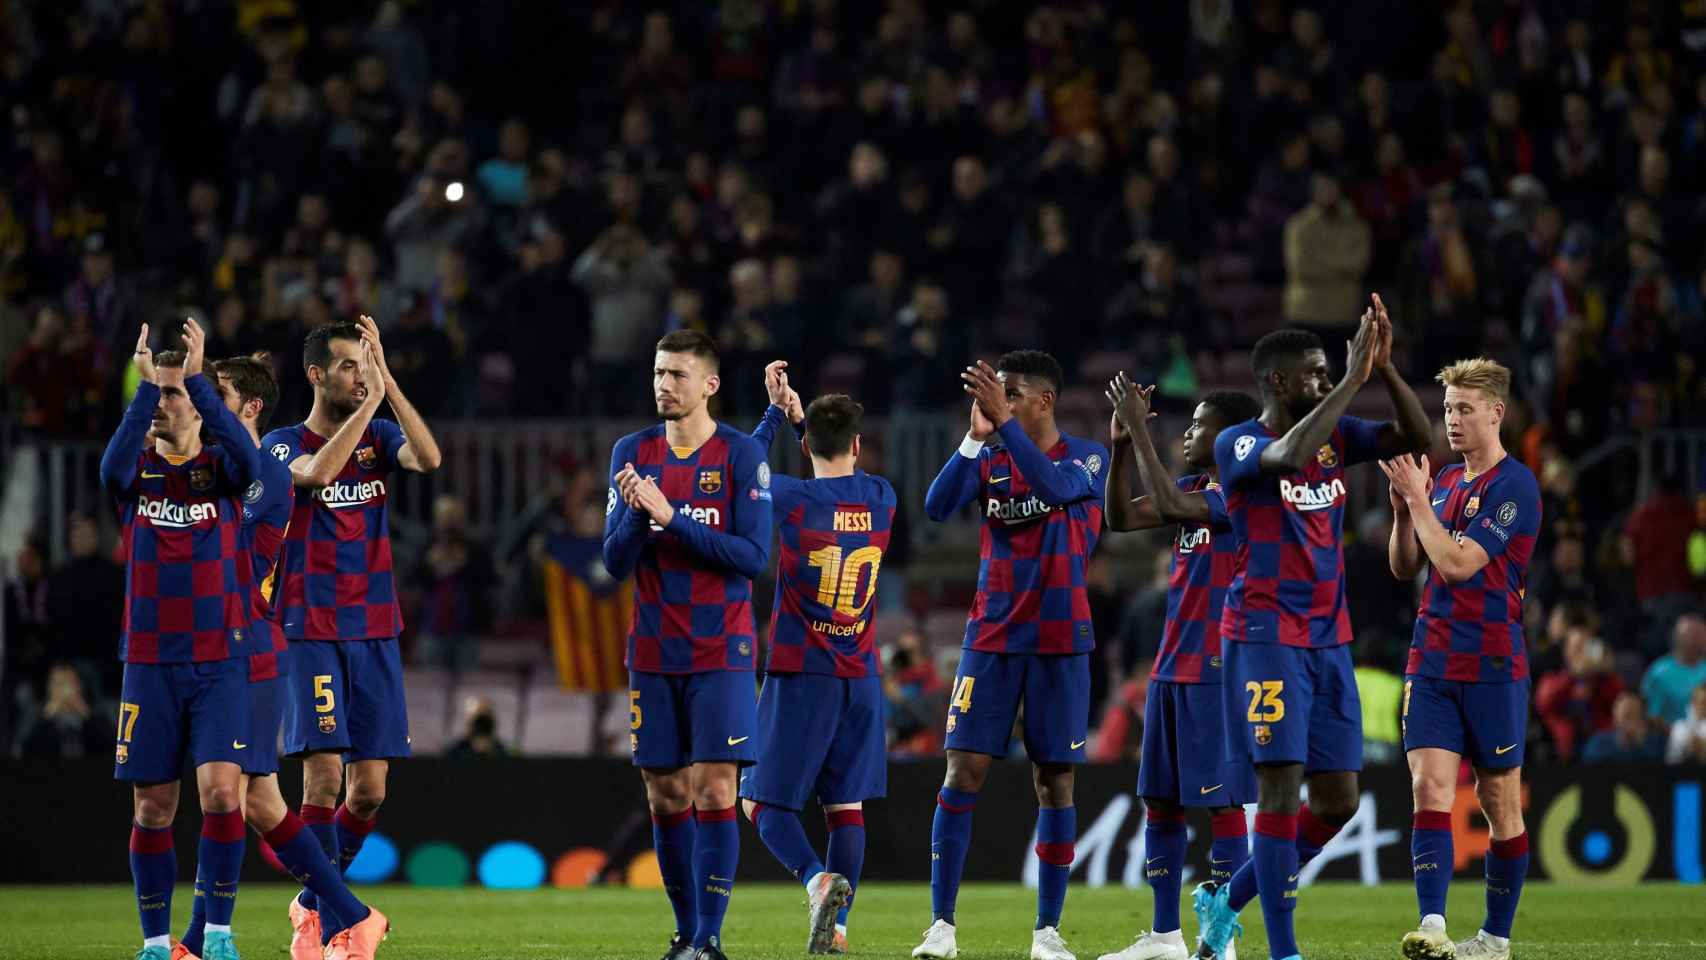 Los jugadores del Barça celebran la victoria contra el Borussia Dortmund en Champions / EFE